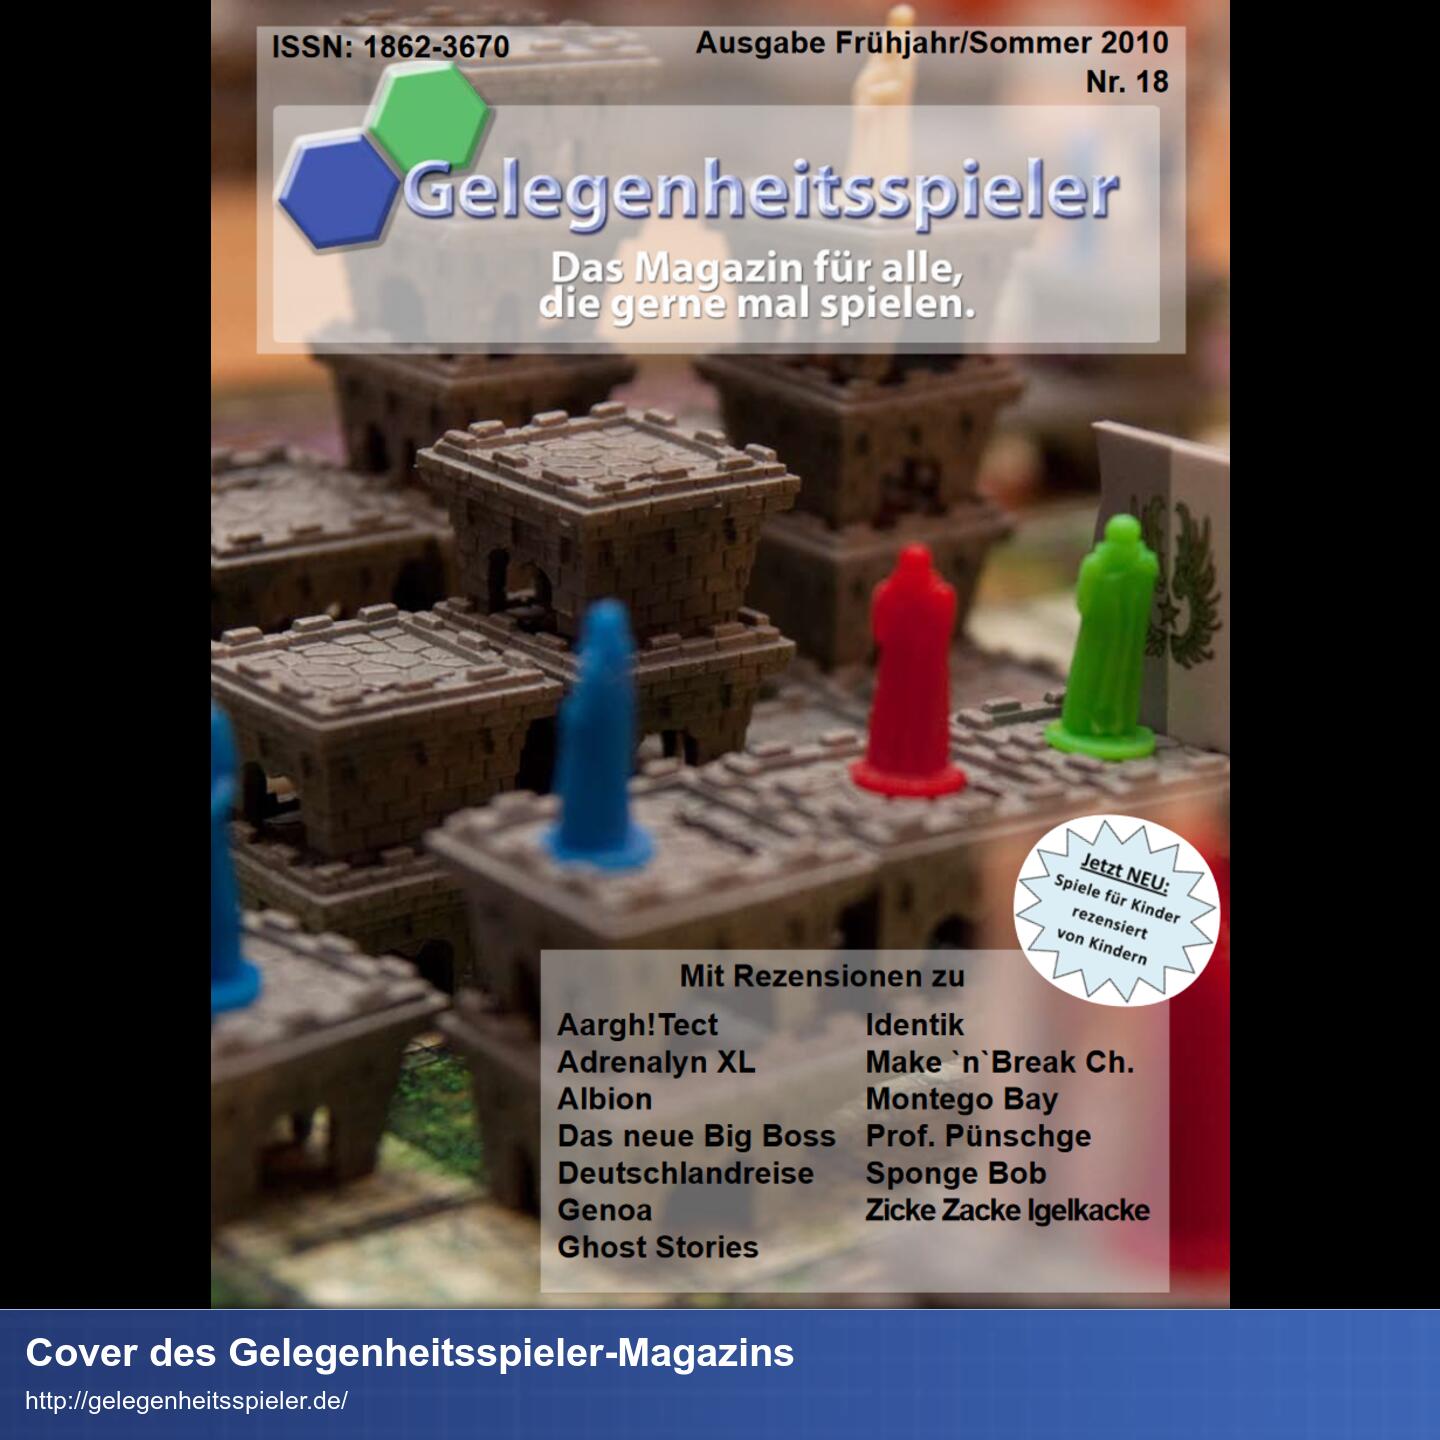 Cover eines Magazins 'Gelegenheitsspieler'. Im Hintergrund sieht man eine Tabletop-Platte und auf den künstliche Mauern stehen bunte Figuren.